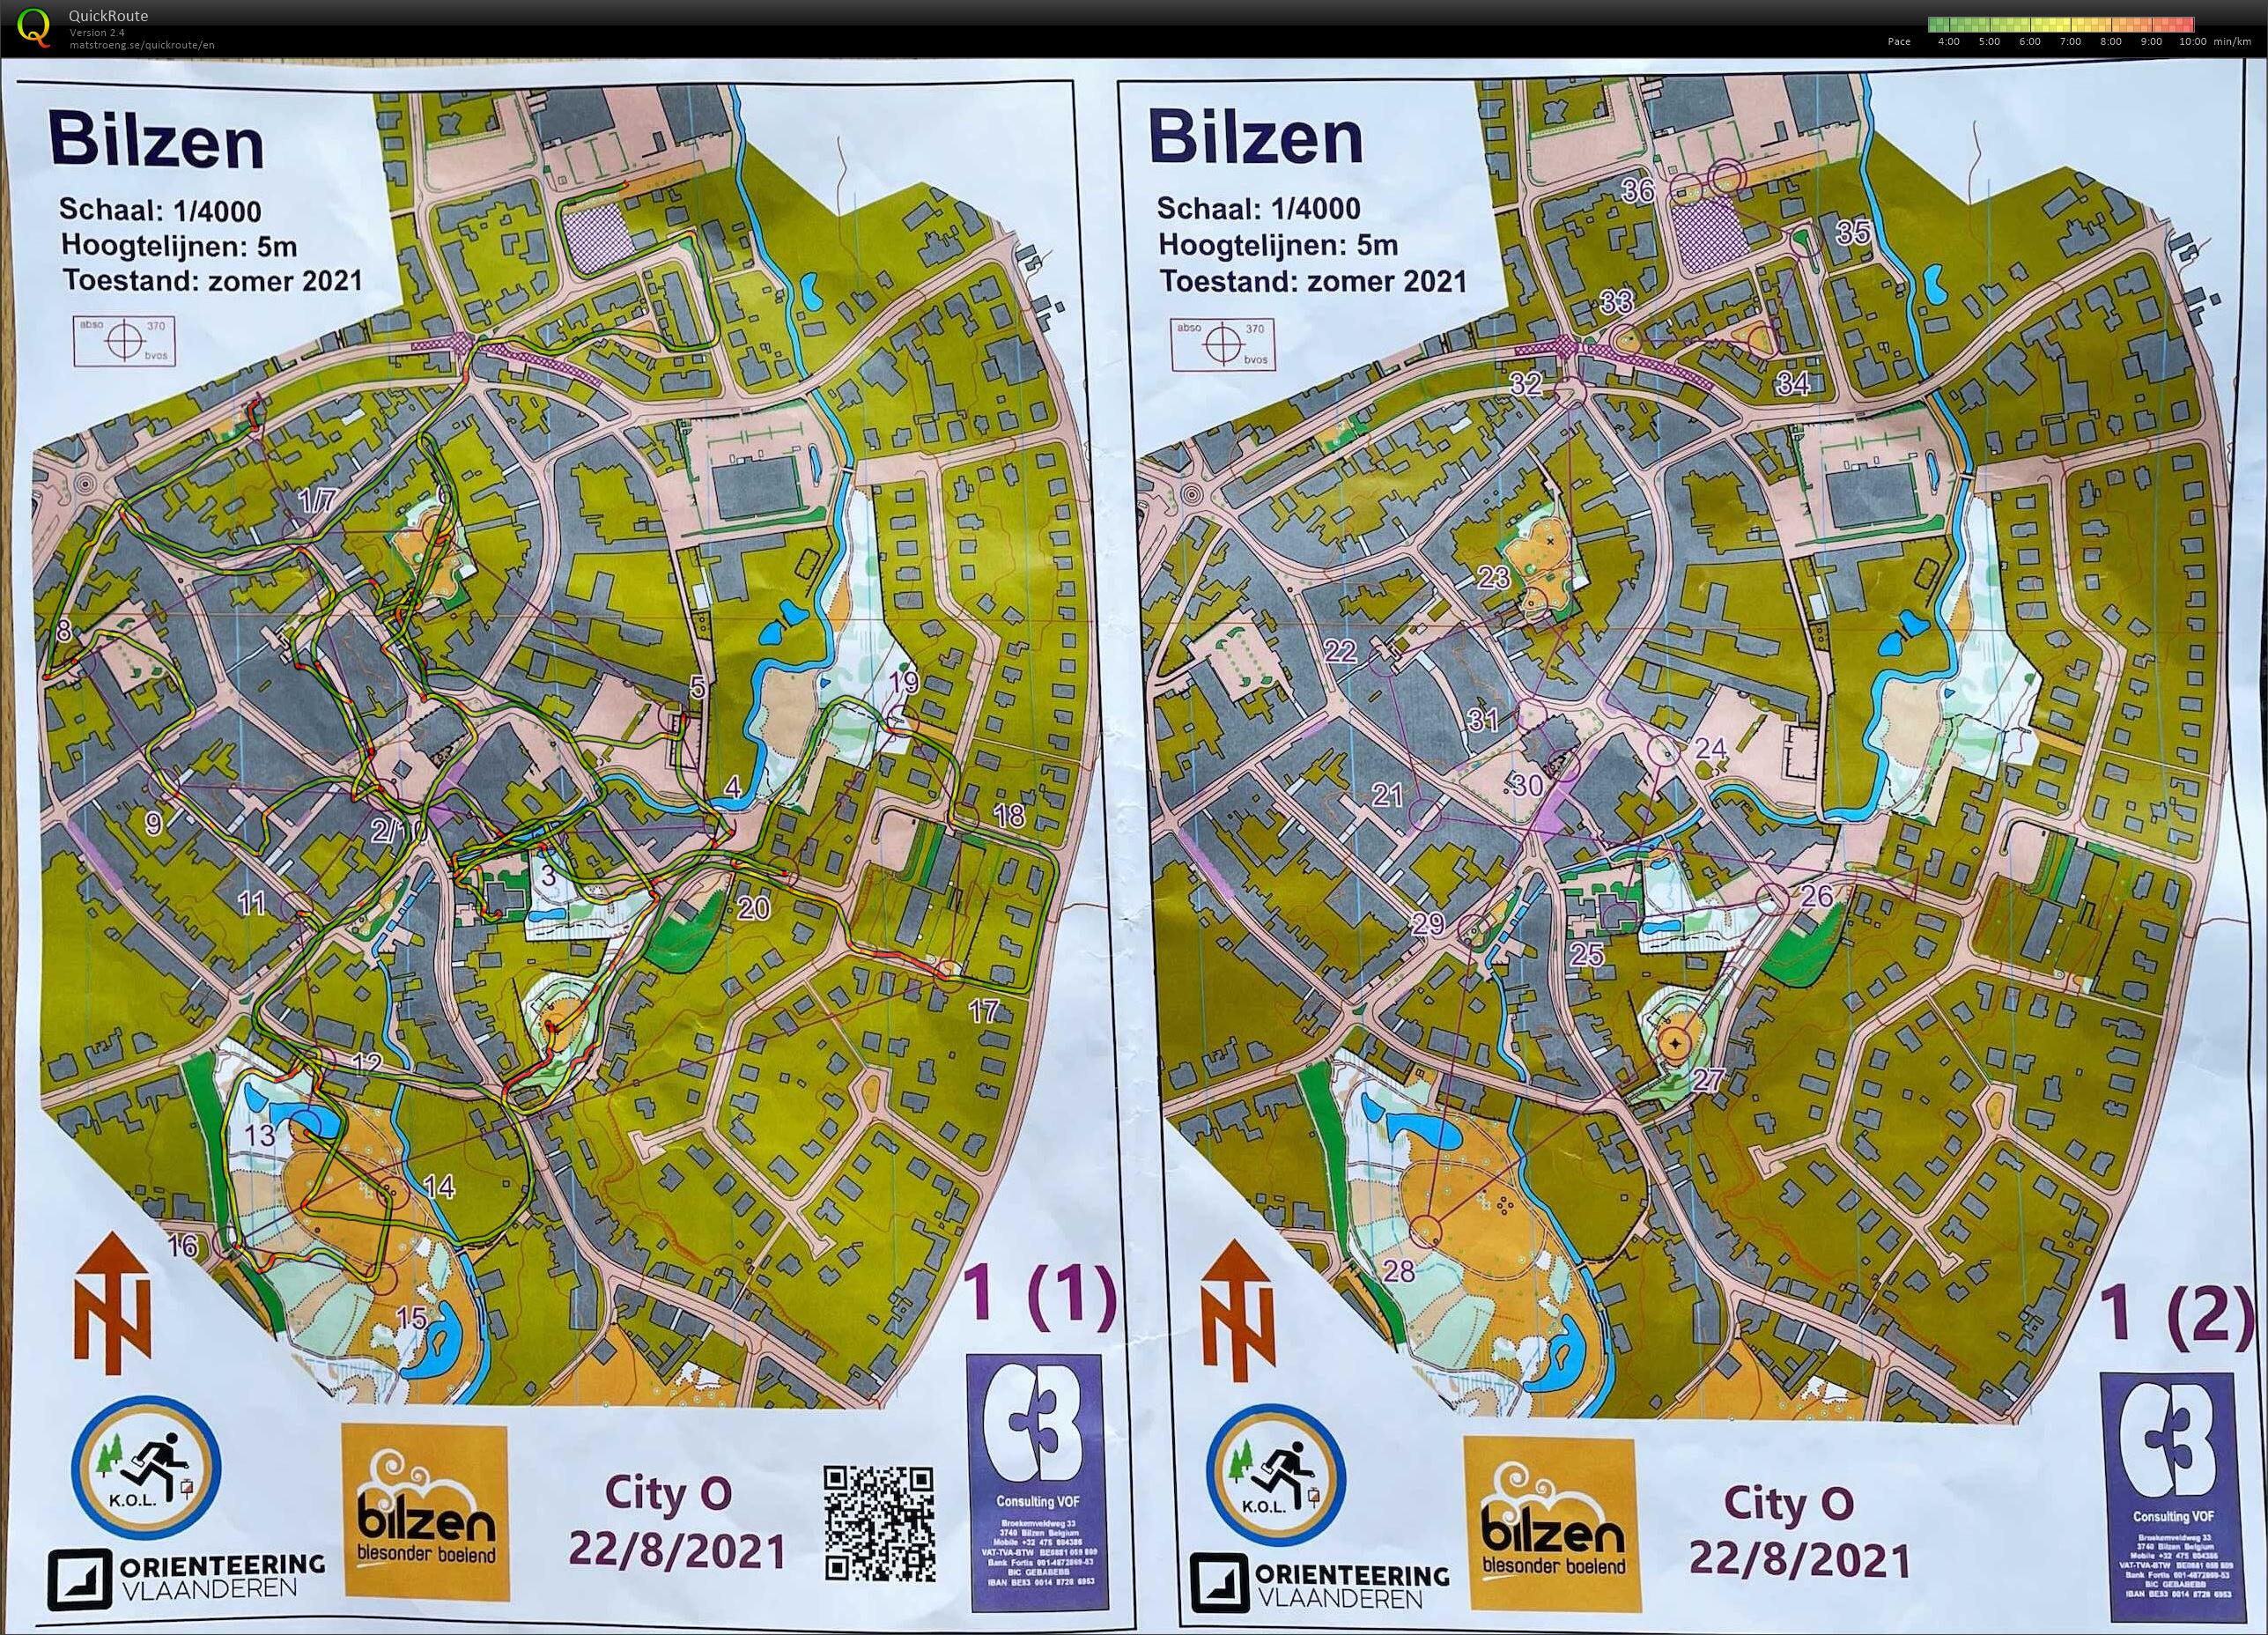 City-O Bilzen (22.08.2021)